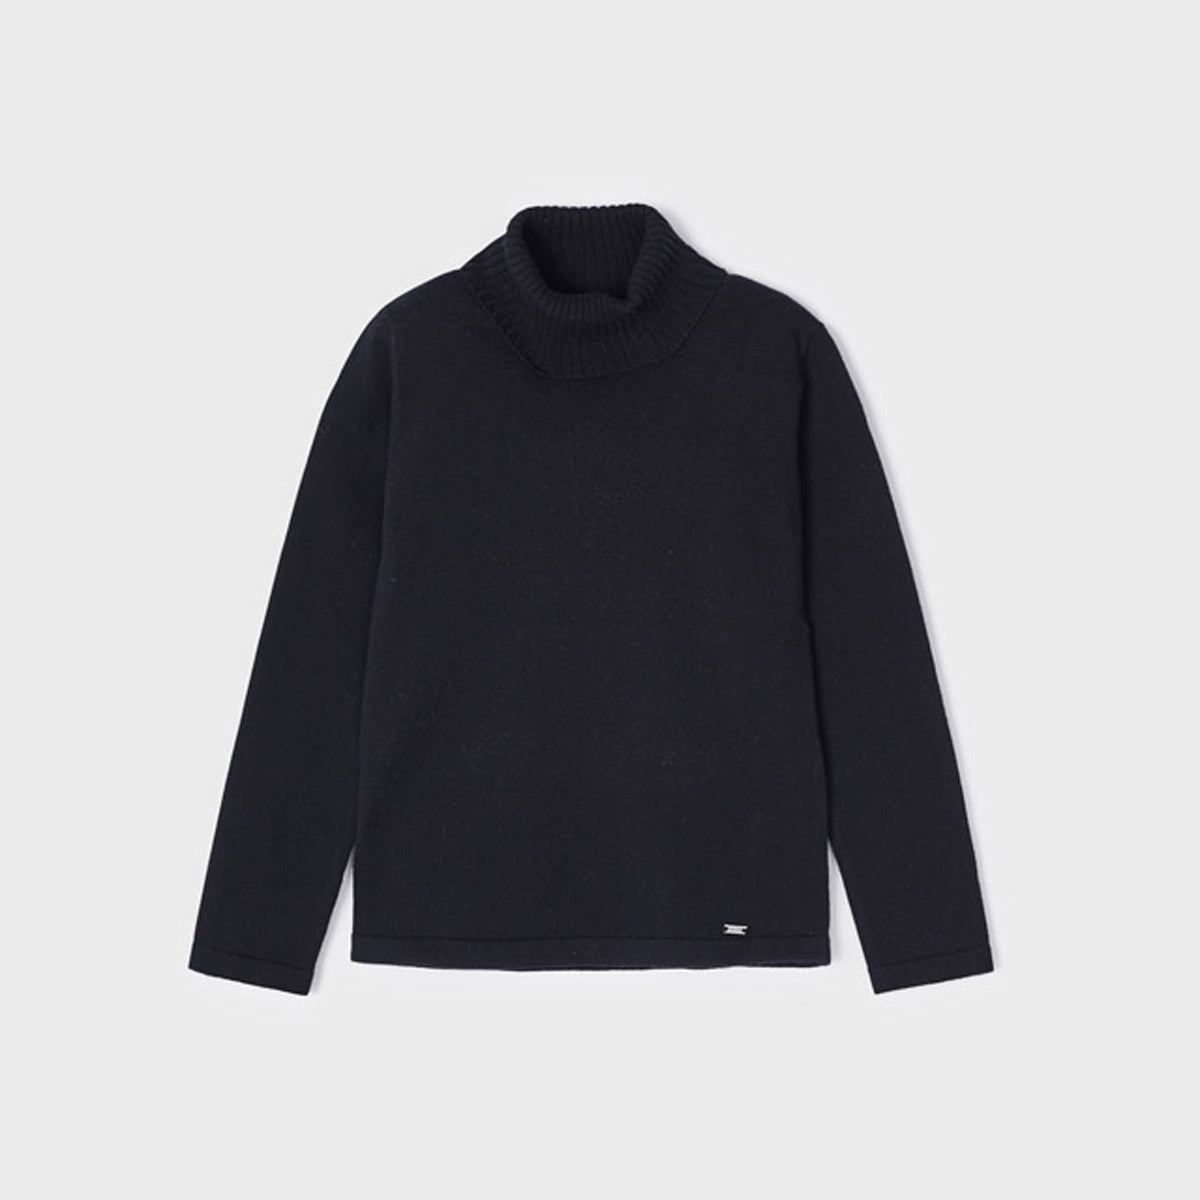 Ecofriends Black Jersey Knit Round Collar Turtleneck Sweater